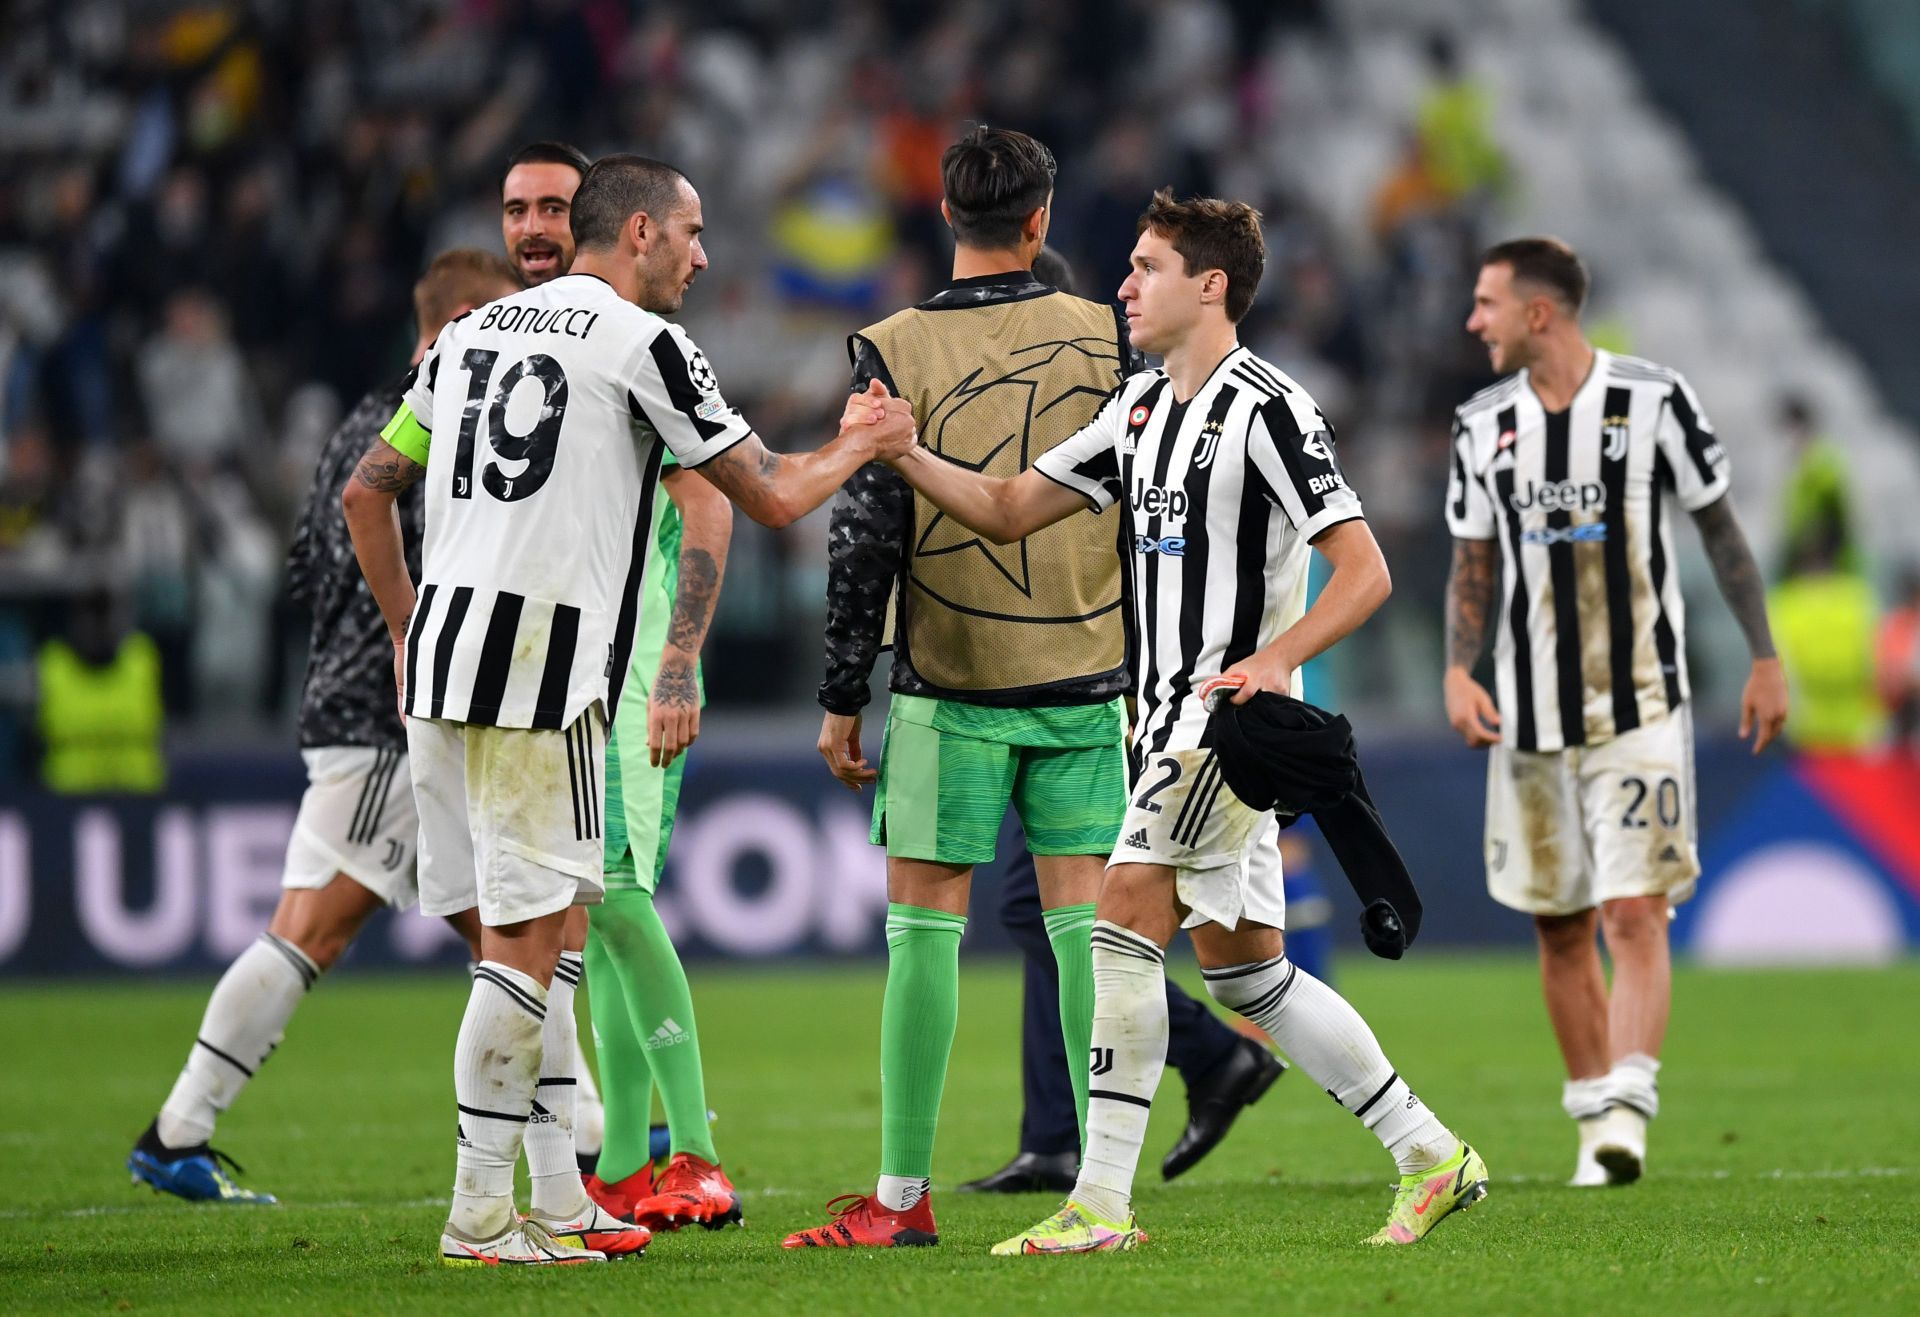 Juventus play Inter Milan on Sunday